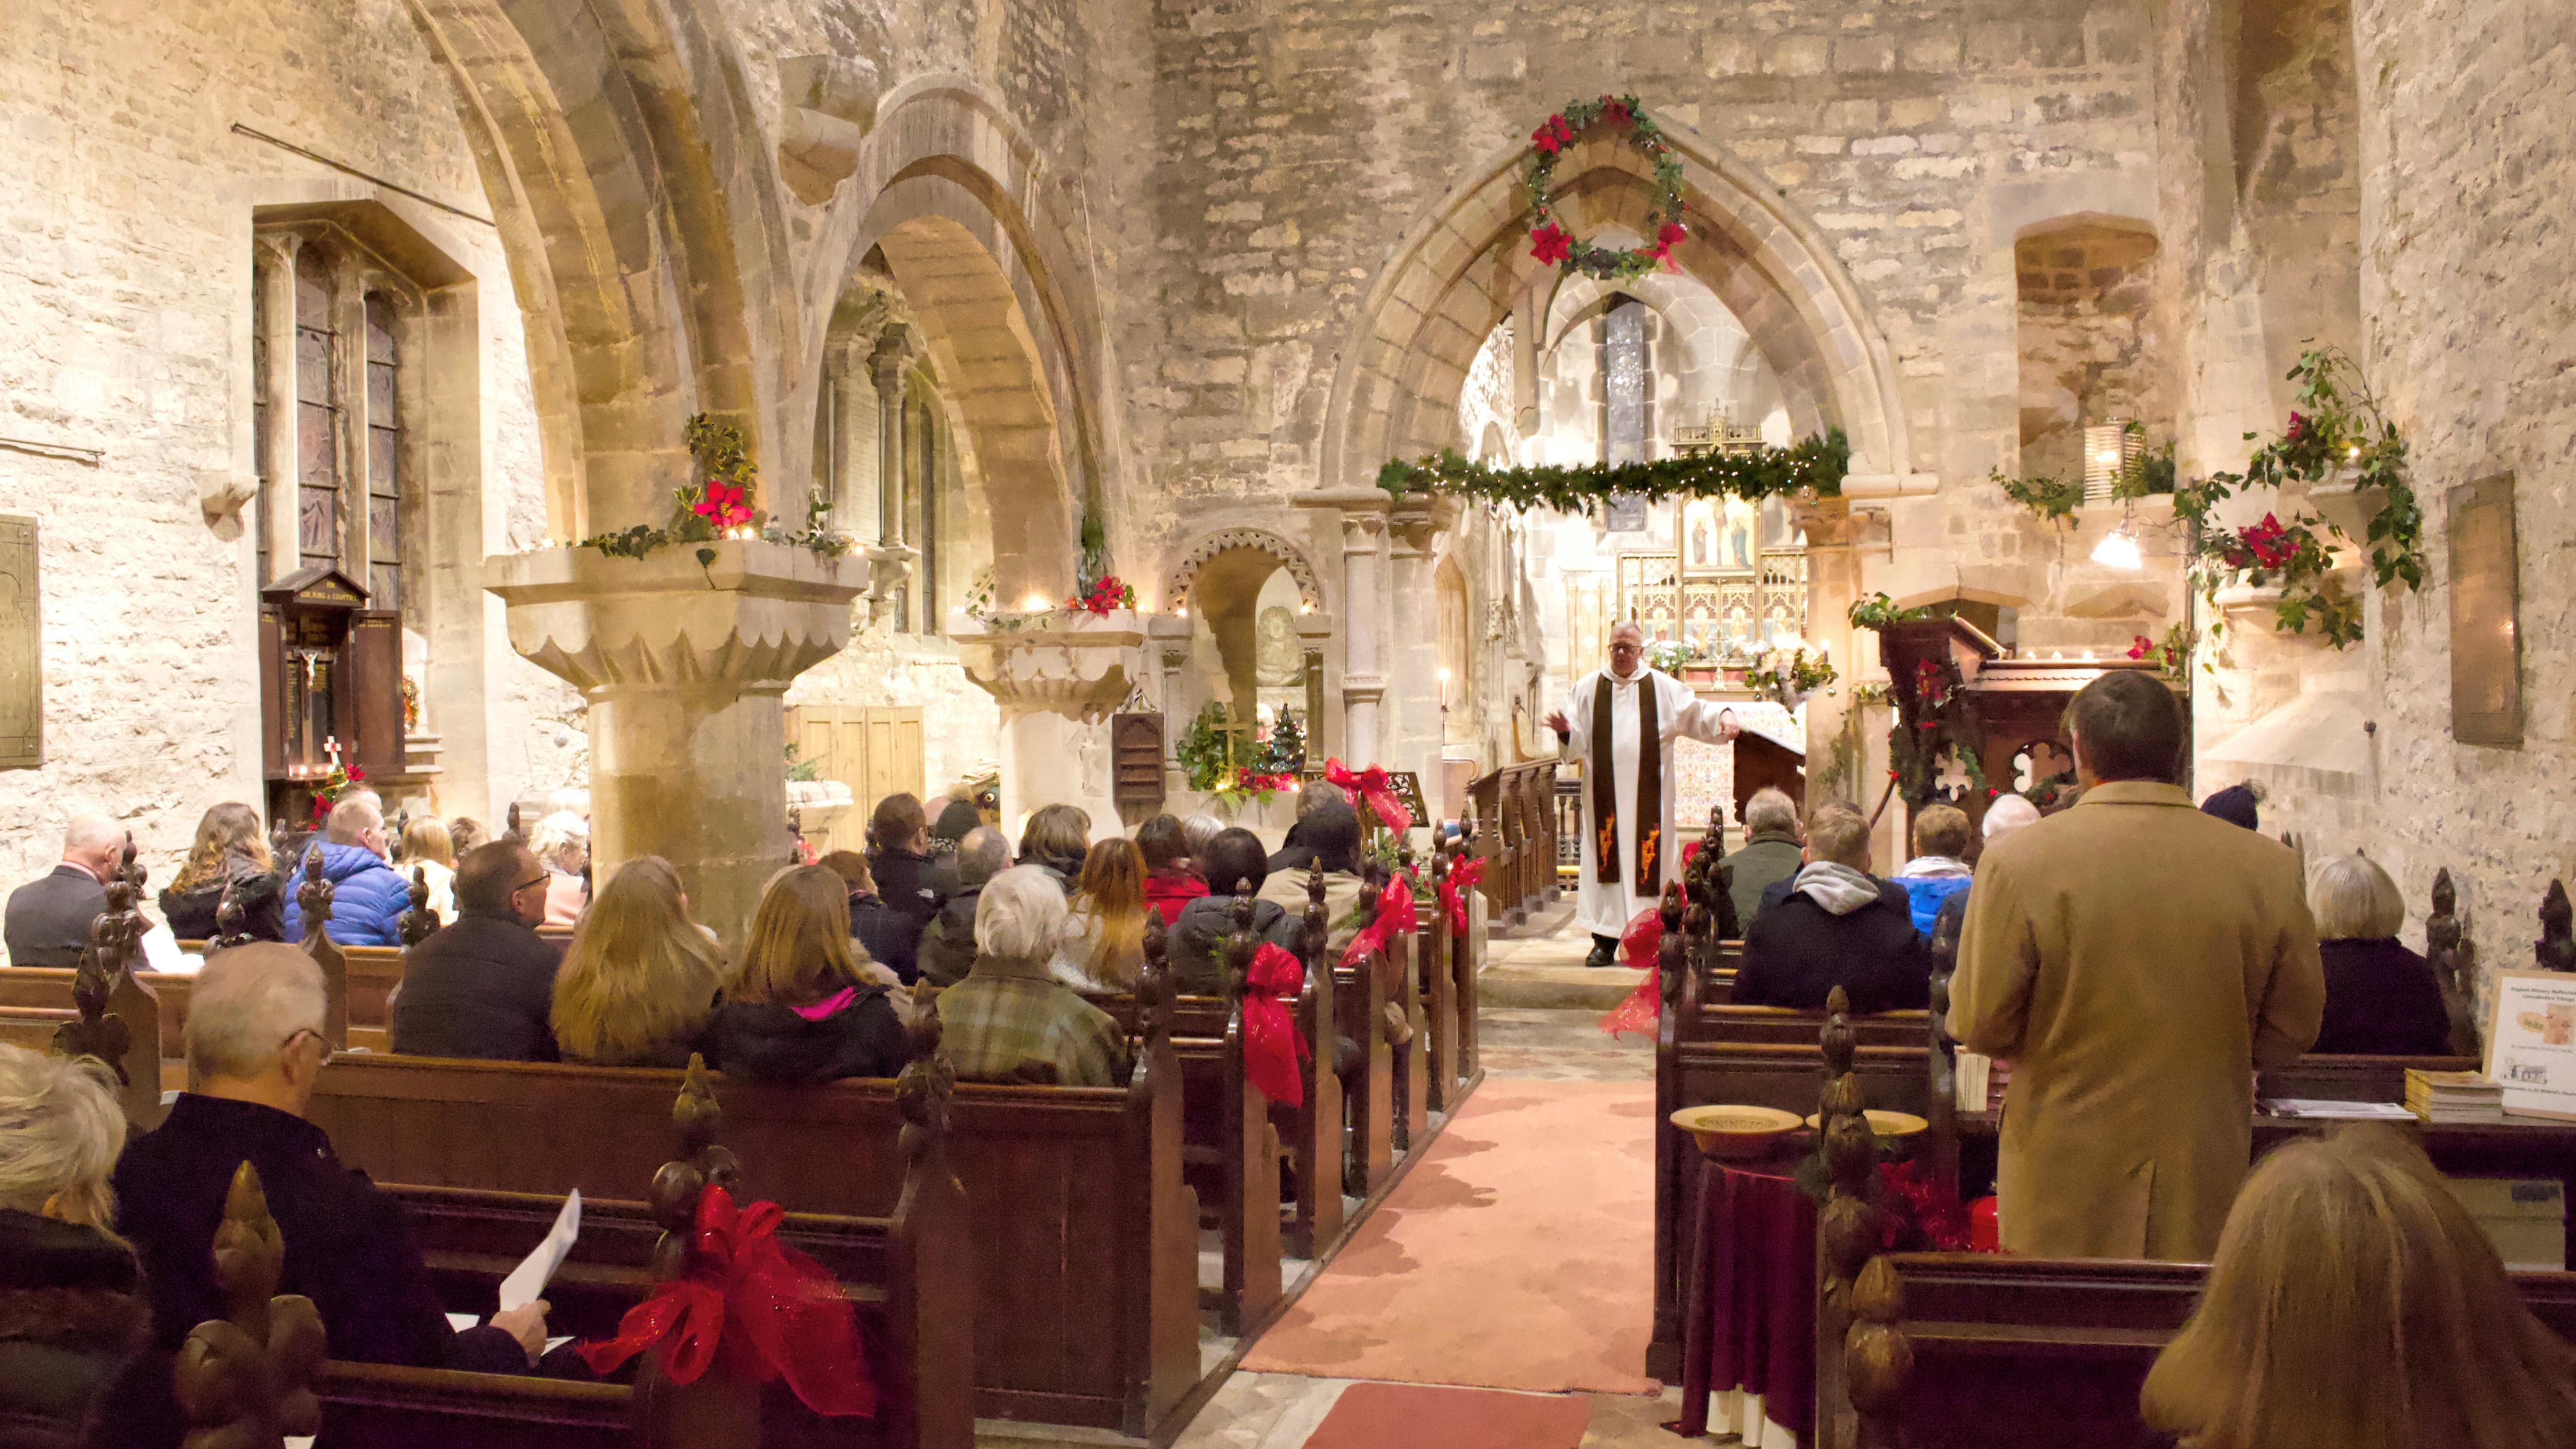 St Wilfrid's Church at Christmas